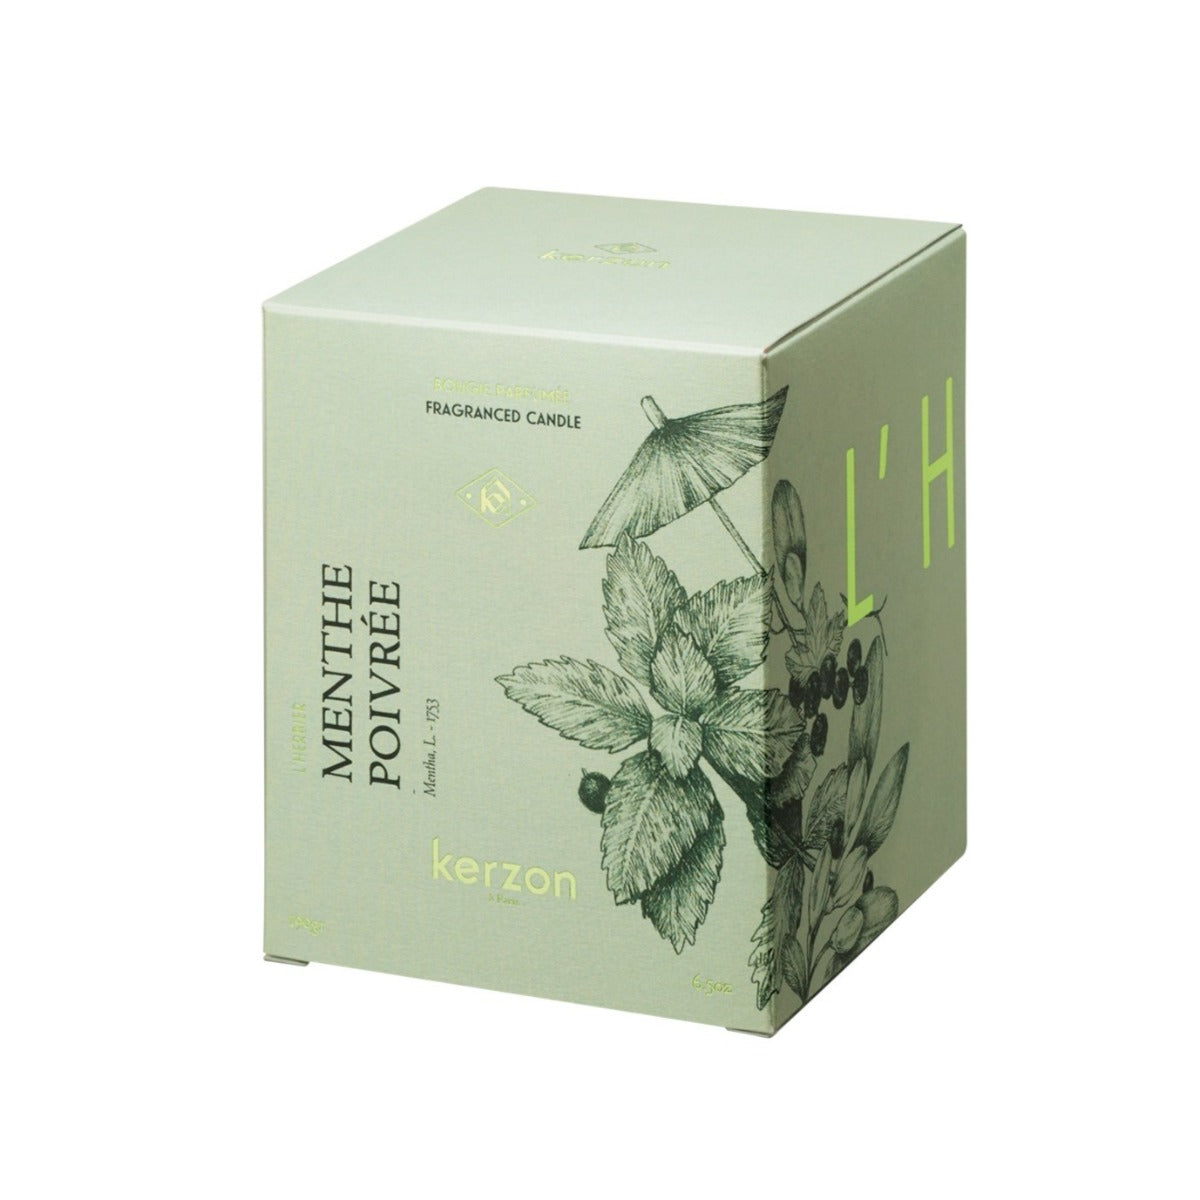 Bougie parfumée de la Collection l'Herbier senteur Menthe Poivrée de chez Kerzon. Etui en papier recyclable